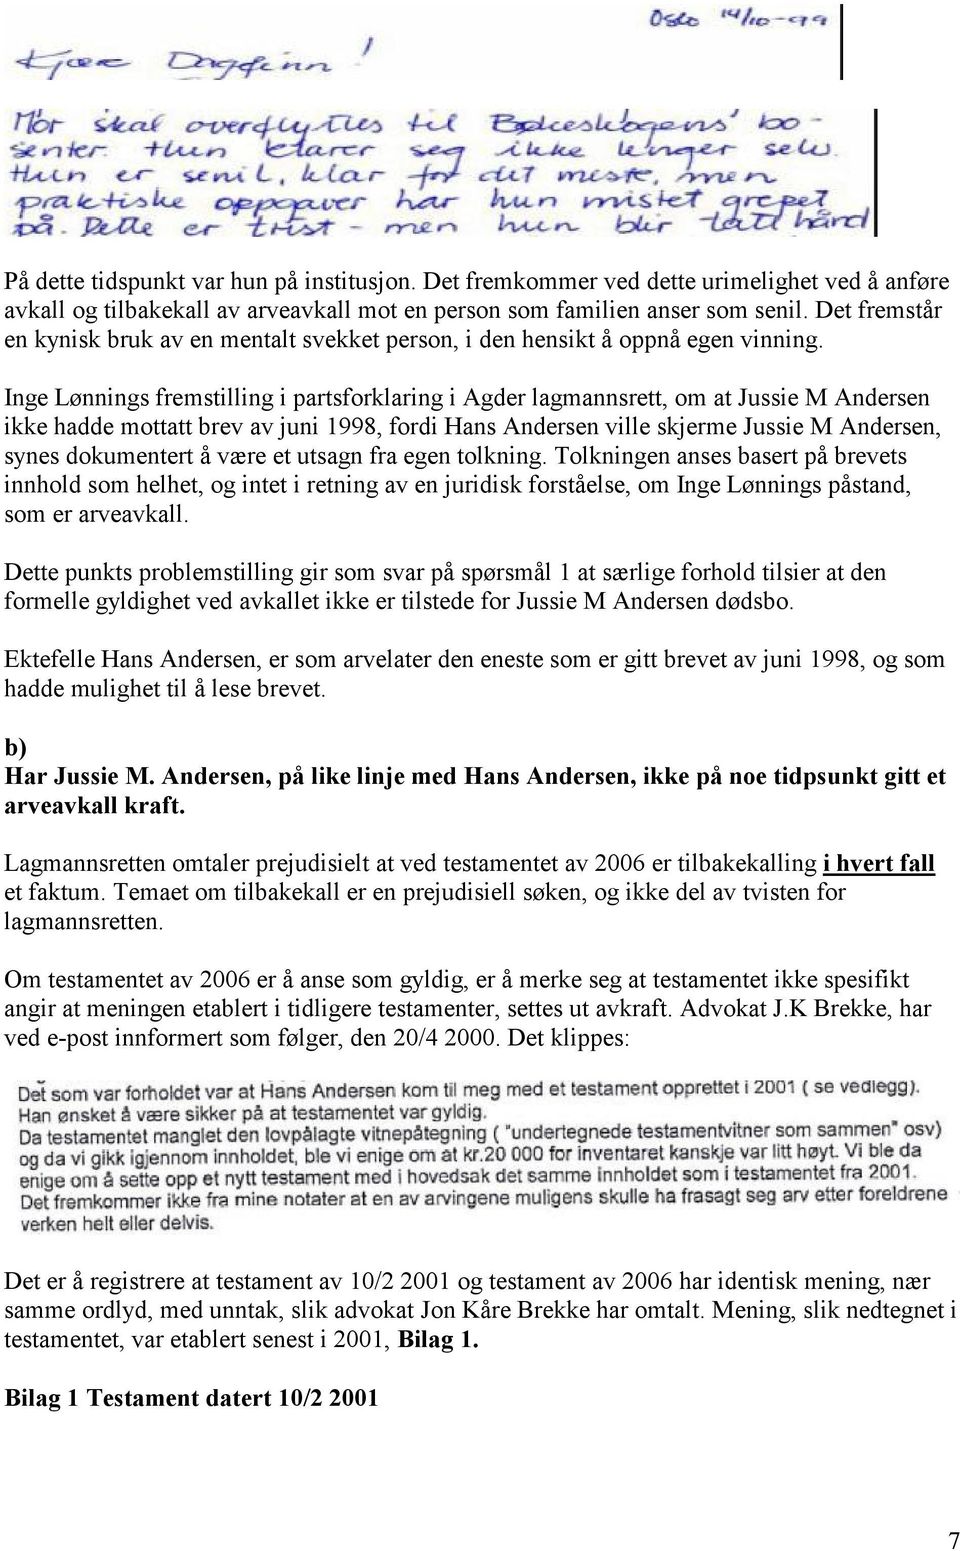 Inge Lønnings fremstilling i partsforklaring i Agder lagmannsrett, om at Jussie M Andersen ikke hadde mottatt brev av juni 1998, fordi Hans Andersen ville skjerme Jussie M Andersen, synes dokumentert